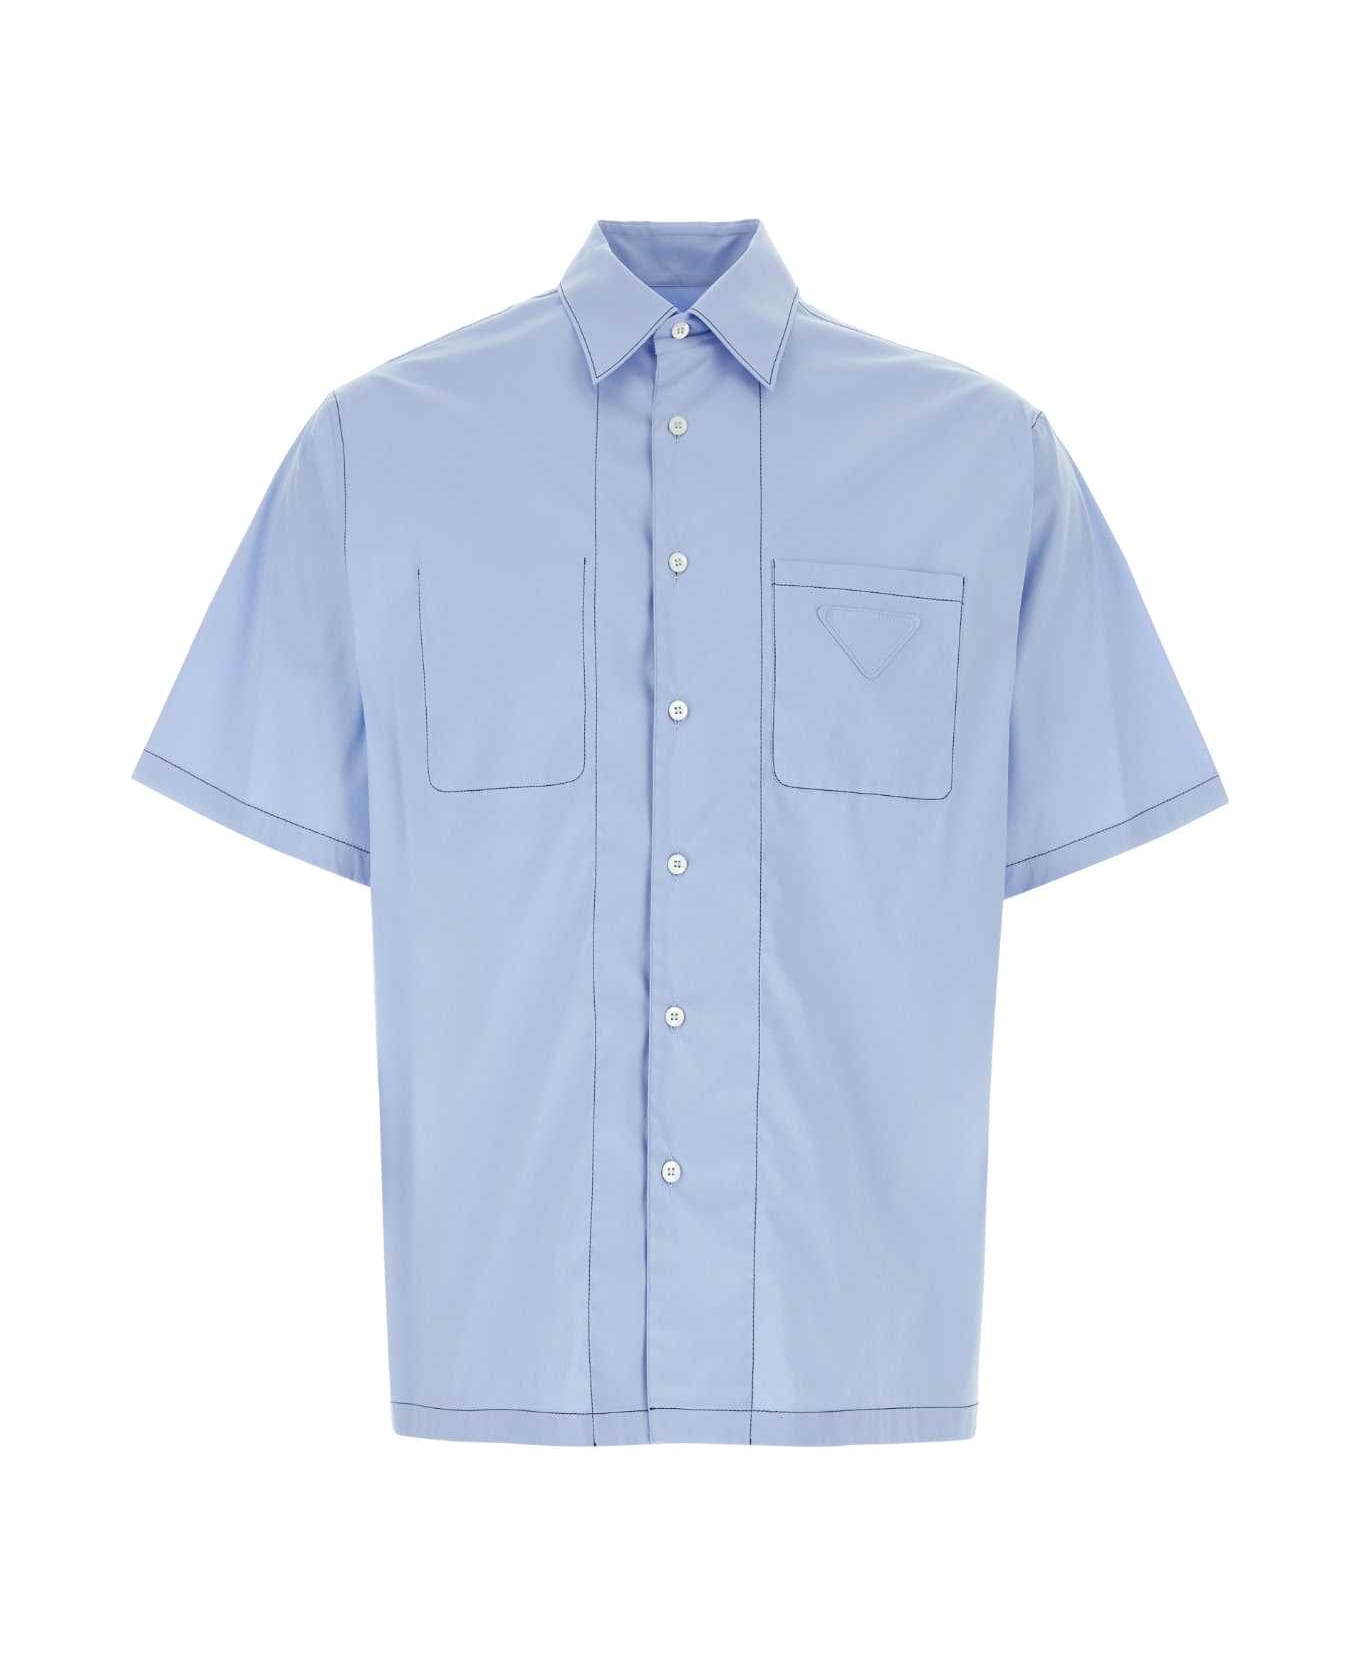 Prada Light Blue Stretch Poplin Shirt - CIELO